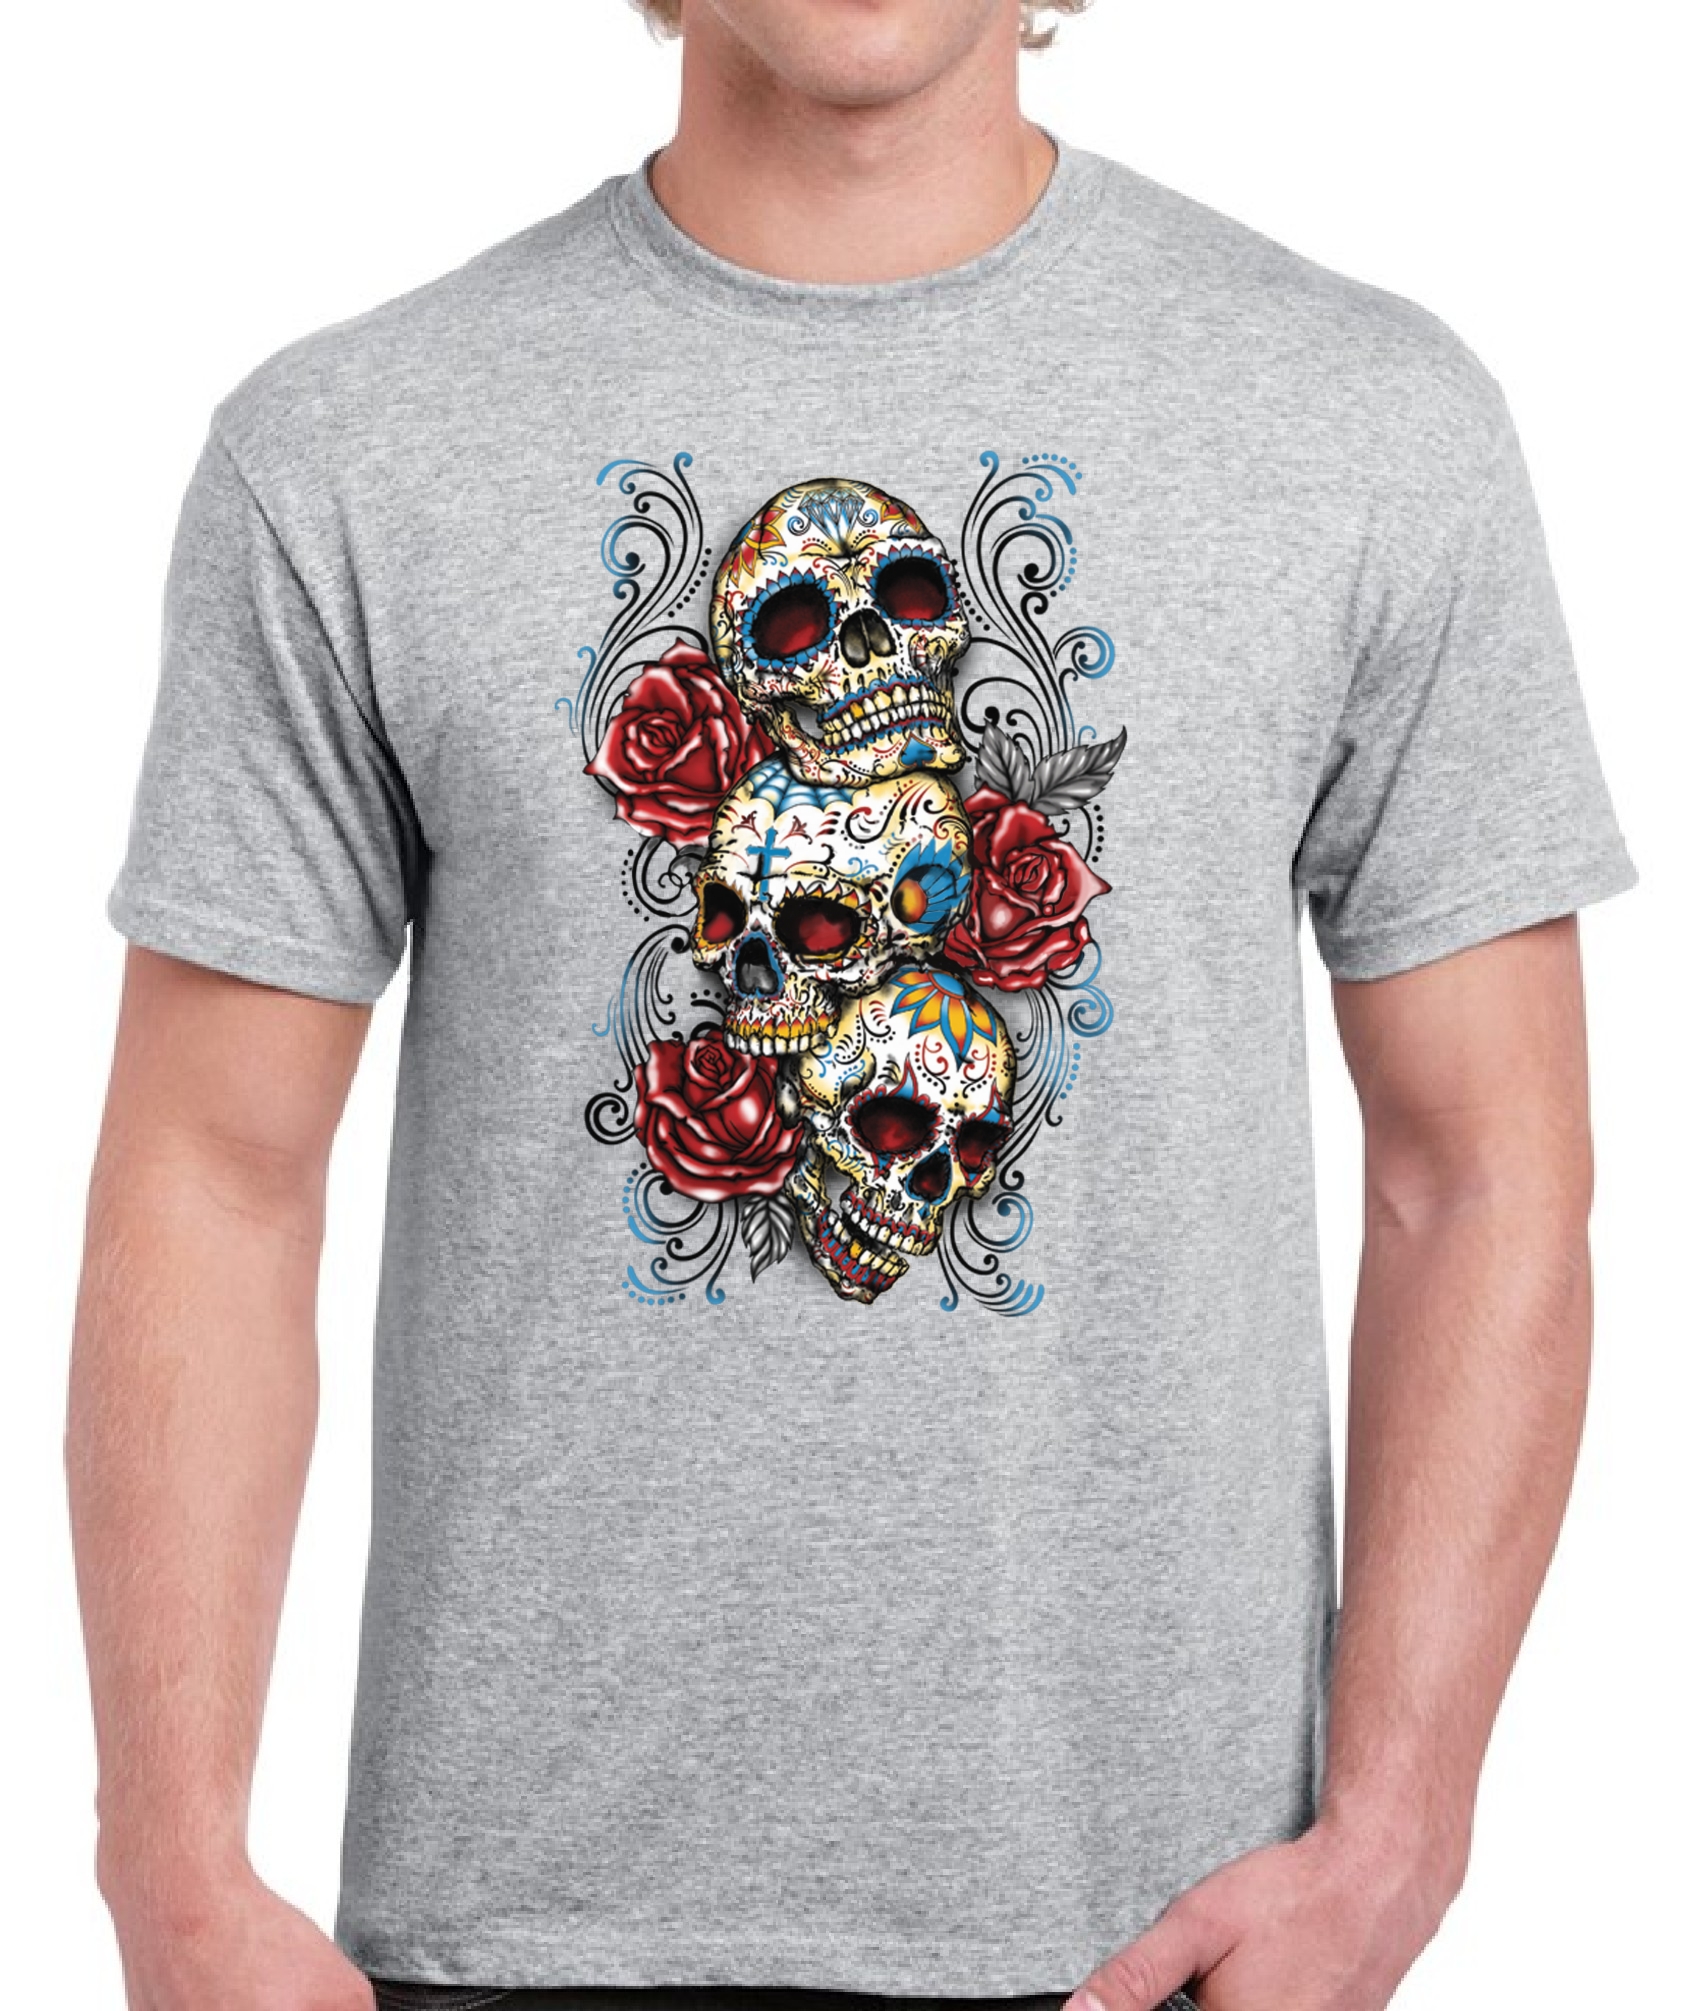 Skull V-neck T shirt Tops Three Sugar Skulls Roses Men's Day of Dead 